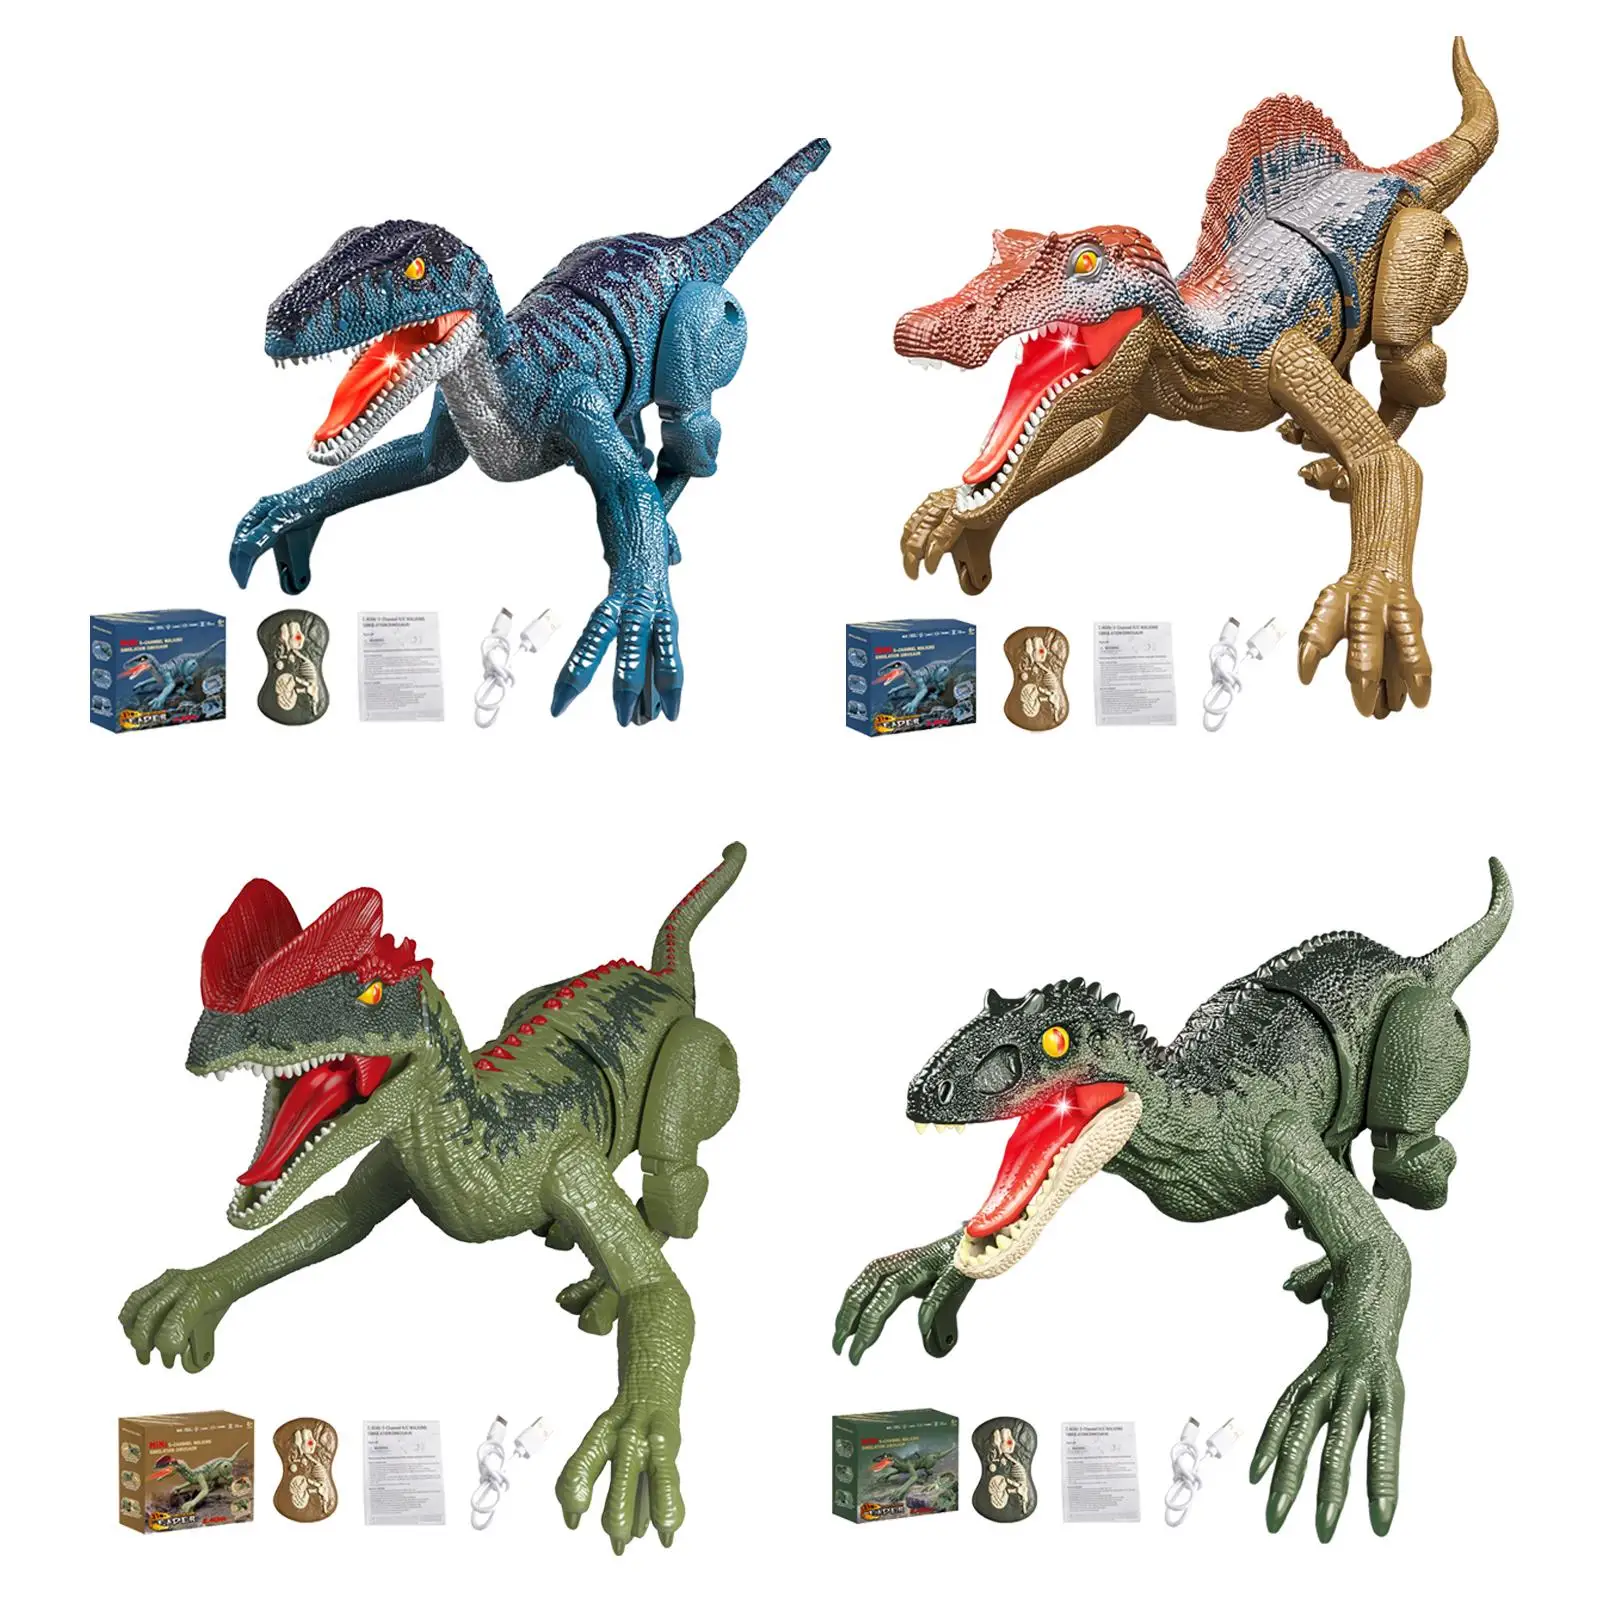 

Игрушки динозавров с дистанционным управлением, электрические игрушки динозавров, игрушки динозавров, детские игрушки динозавров для детей, подарки на день рождения для девочек